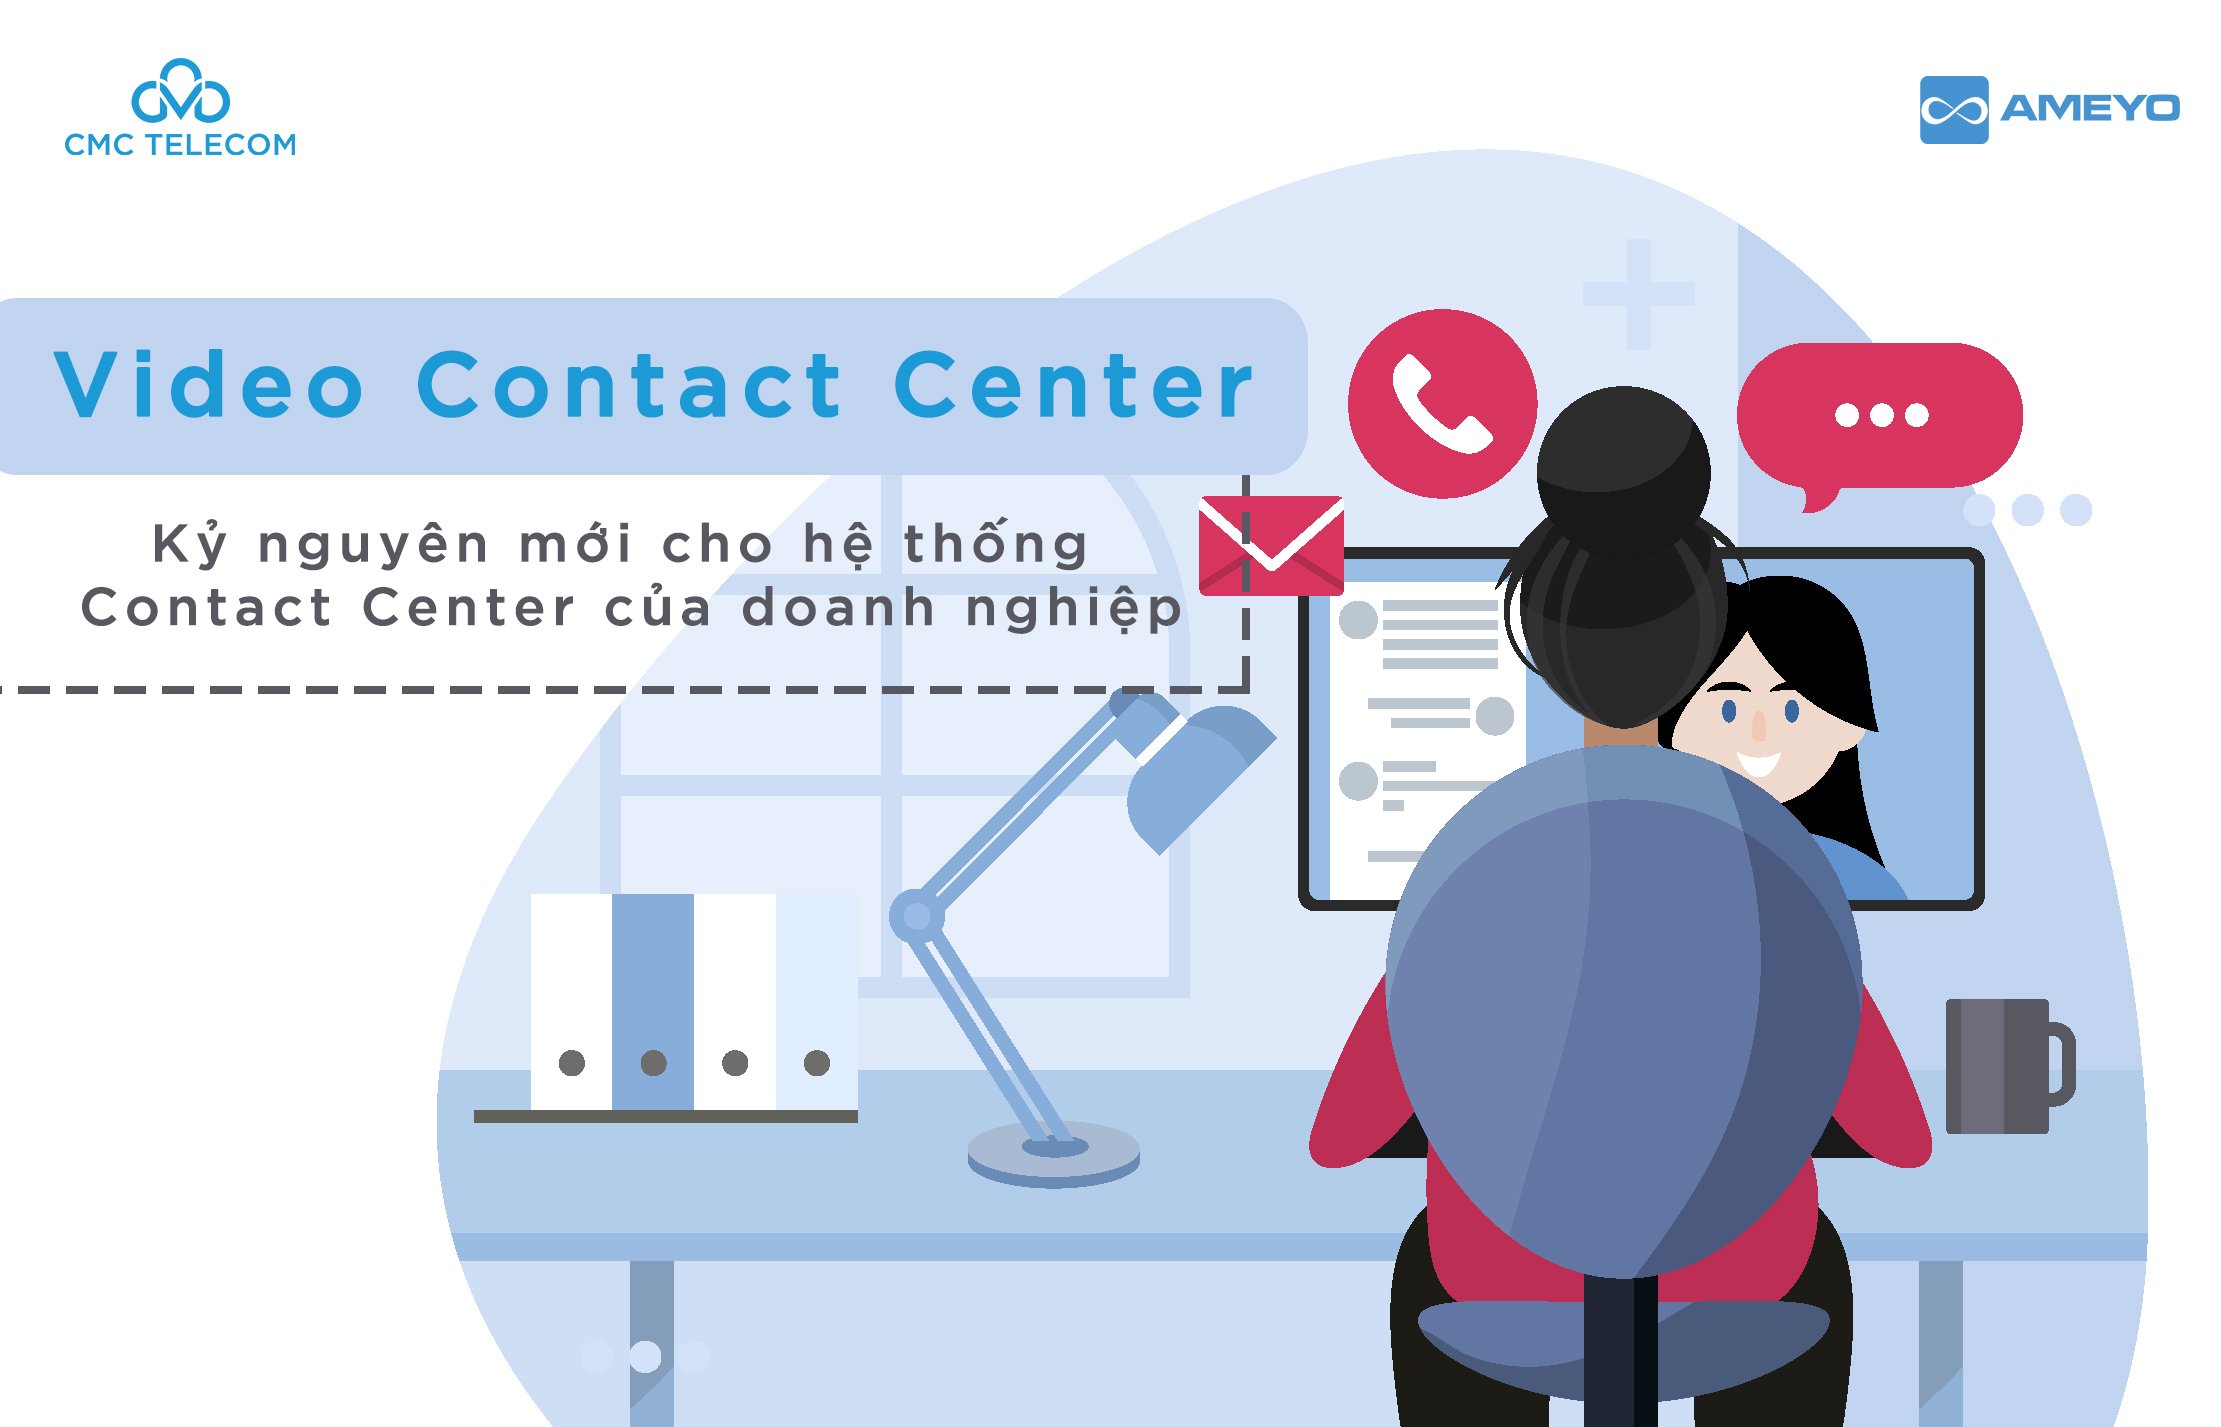 Contact Center Ameyo - Hệ thống Chăm Sóc Khách Hàng cho Doanh Nghiệp